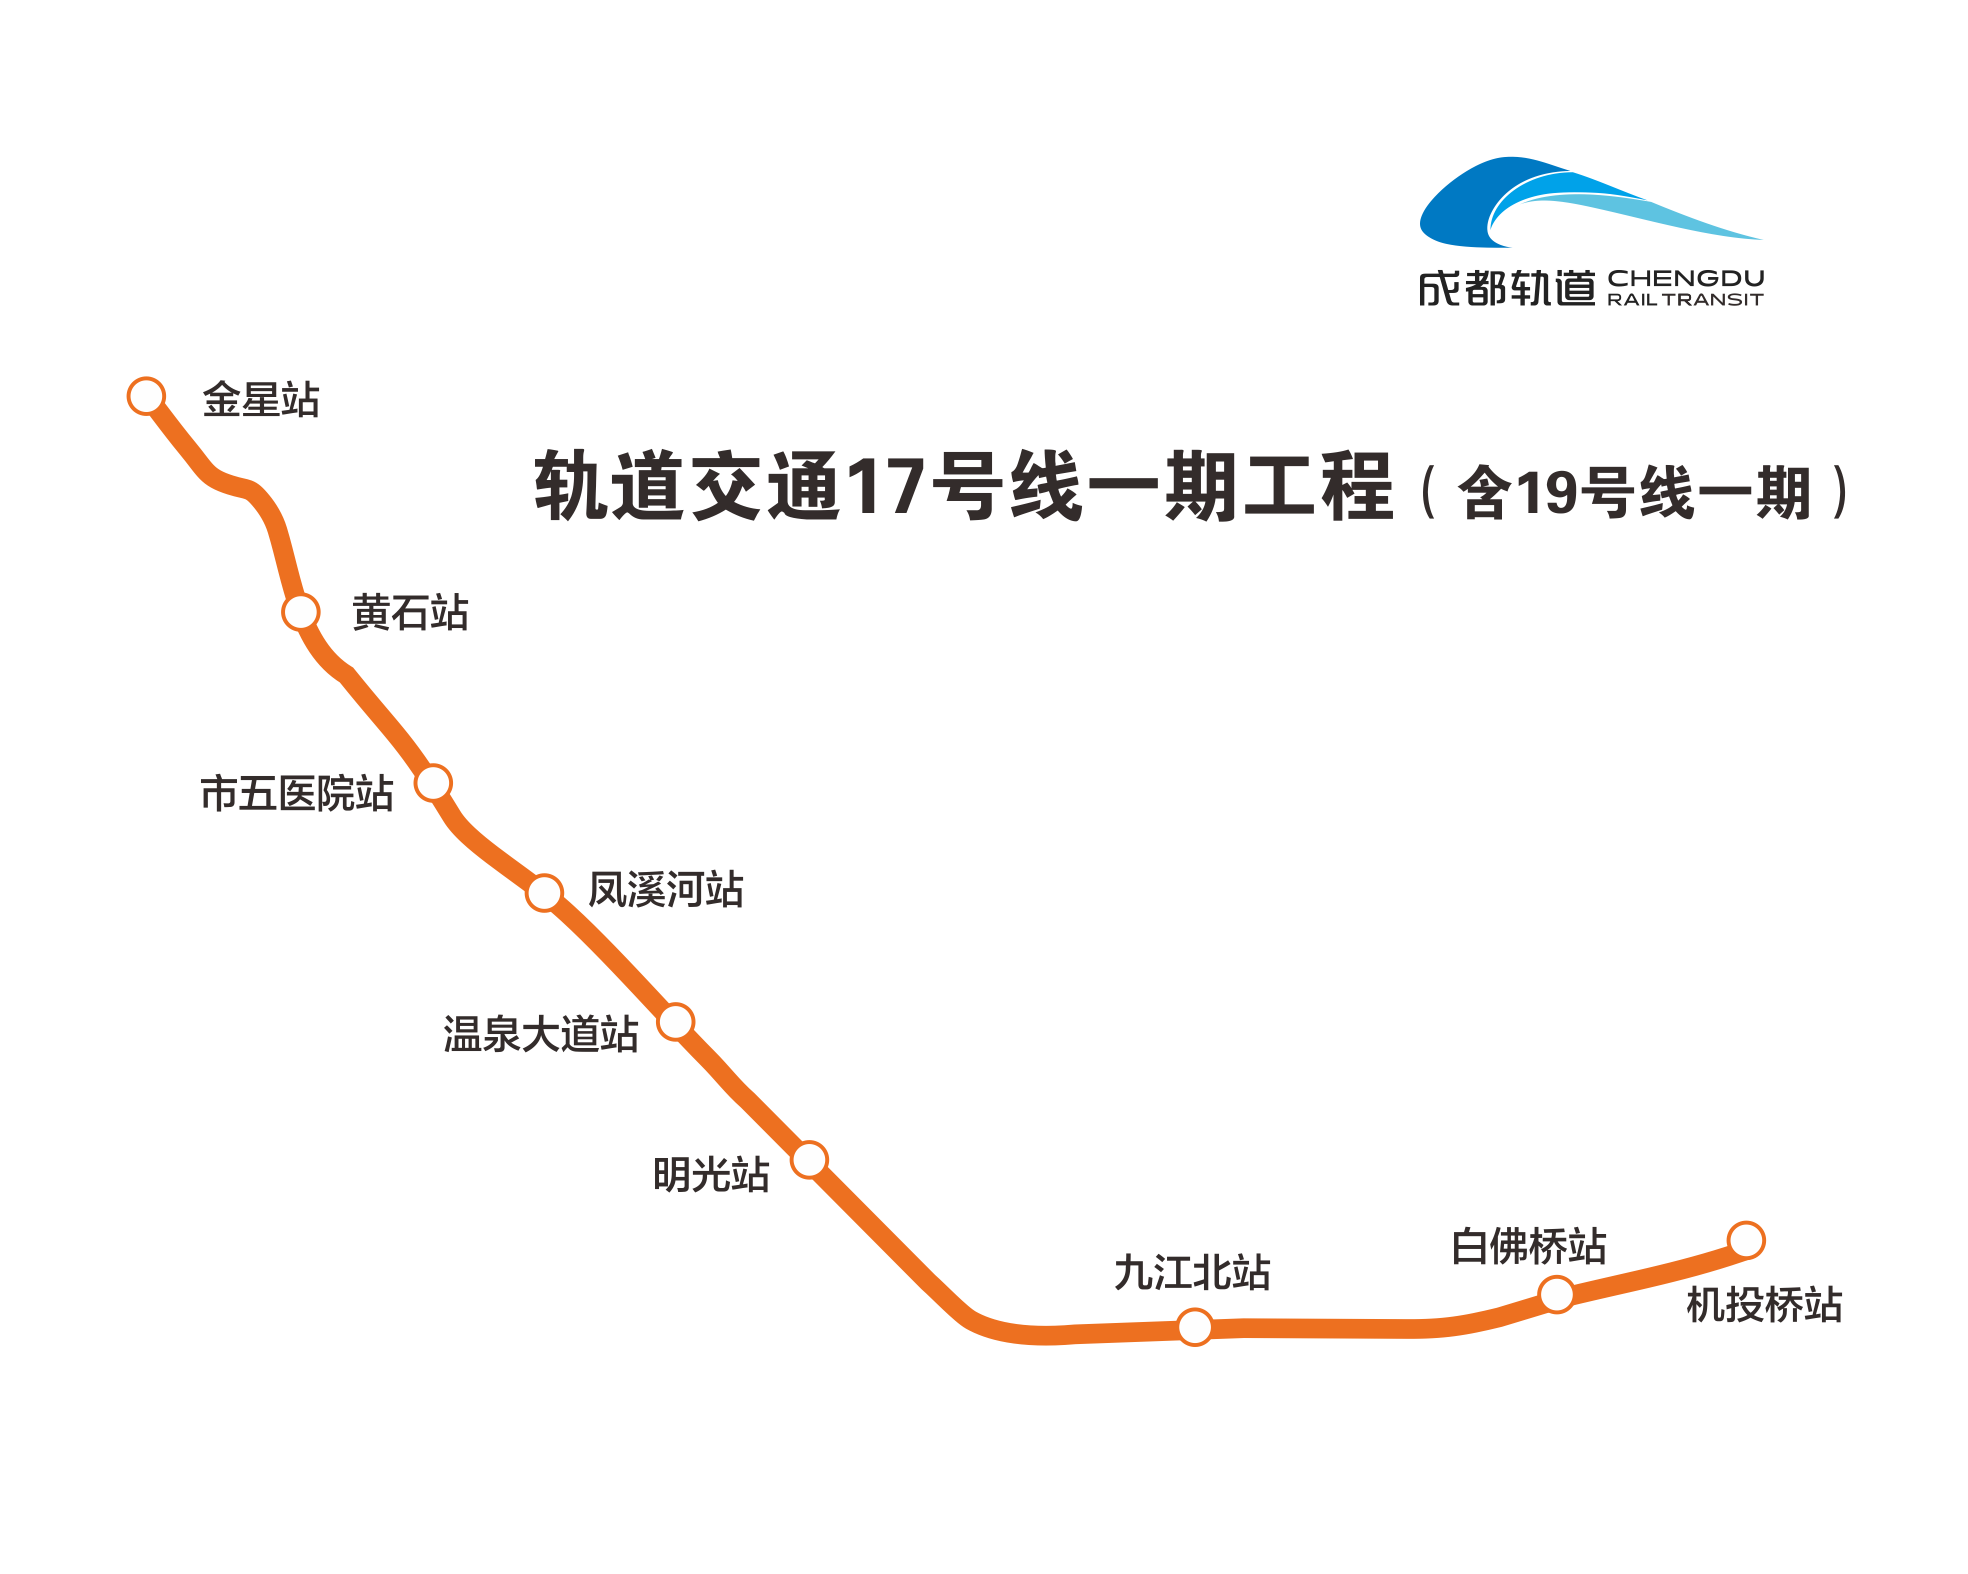 成都轨道交通17号线一期工程开始铺轨 开通后温江迈入"双地铁"时代